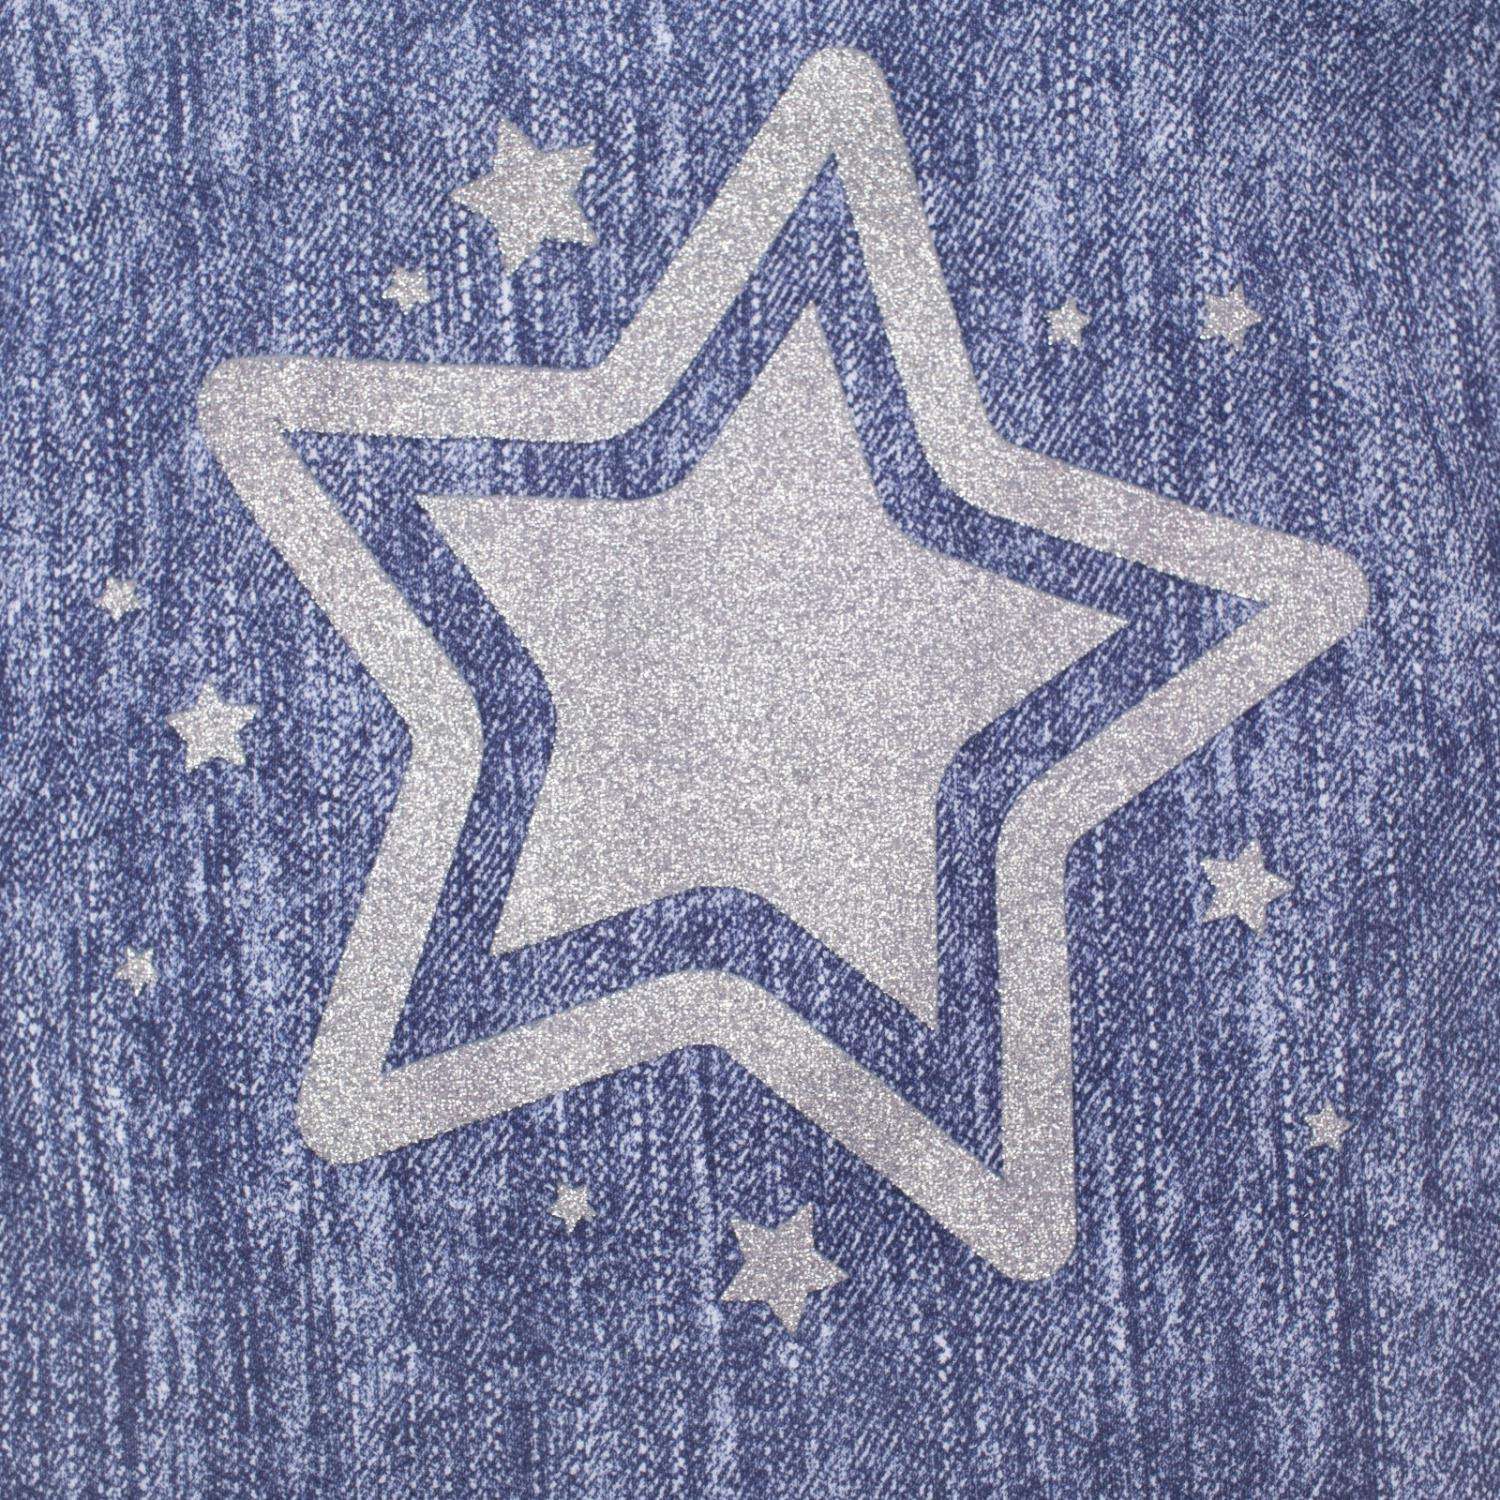 Звезда крошка. Джинсовая звезда. Джинсовая звезда на прозрачном фоне. Рисунок звезды на джинсах. Трафарет звезд для джинс.